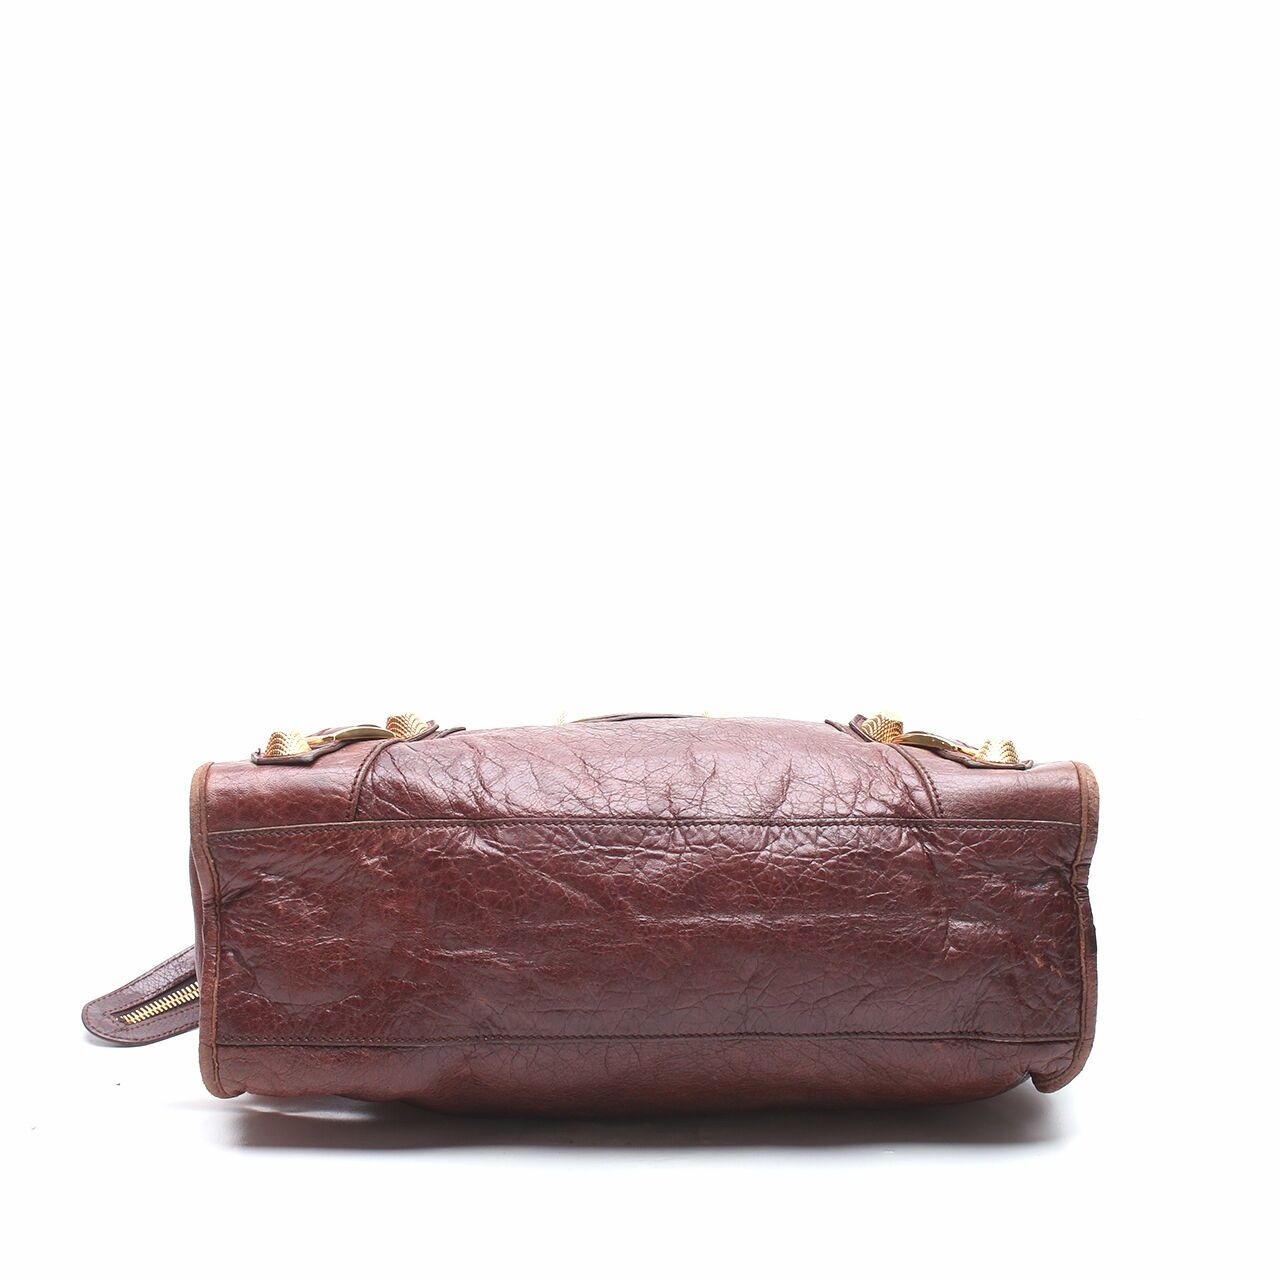 Balenciaga Brown Satchel Bag